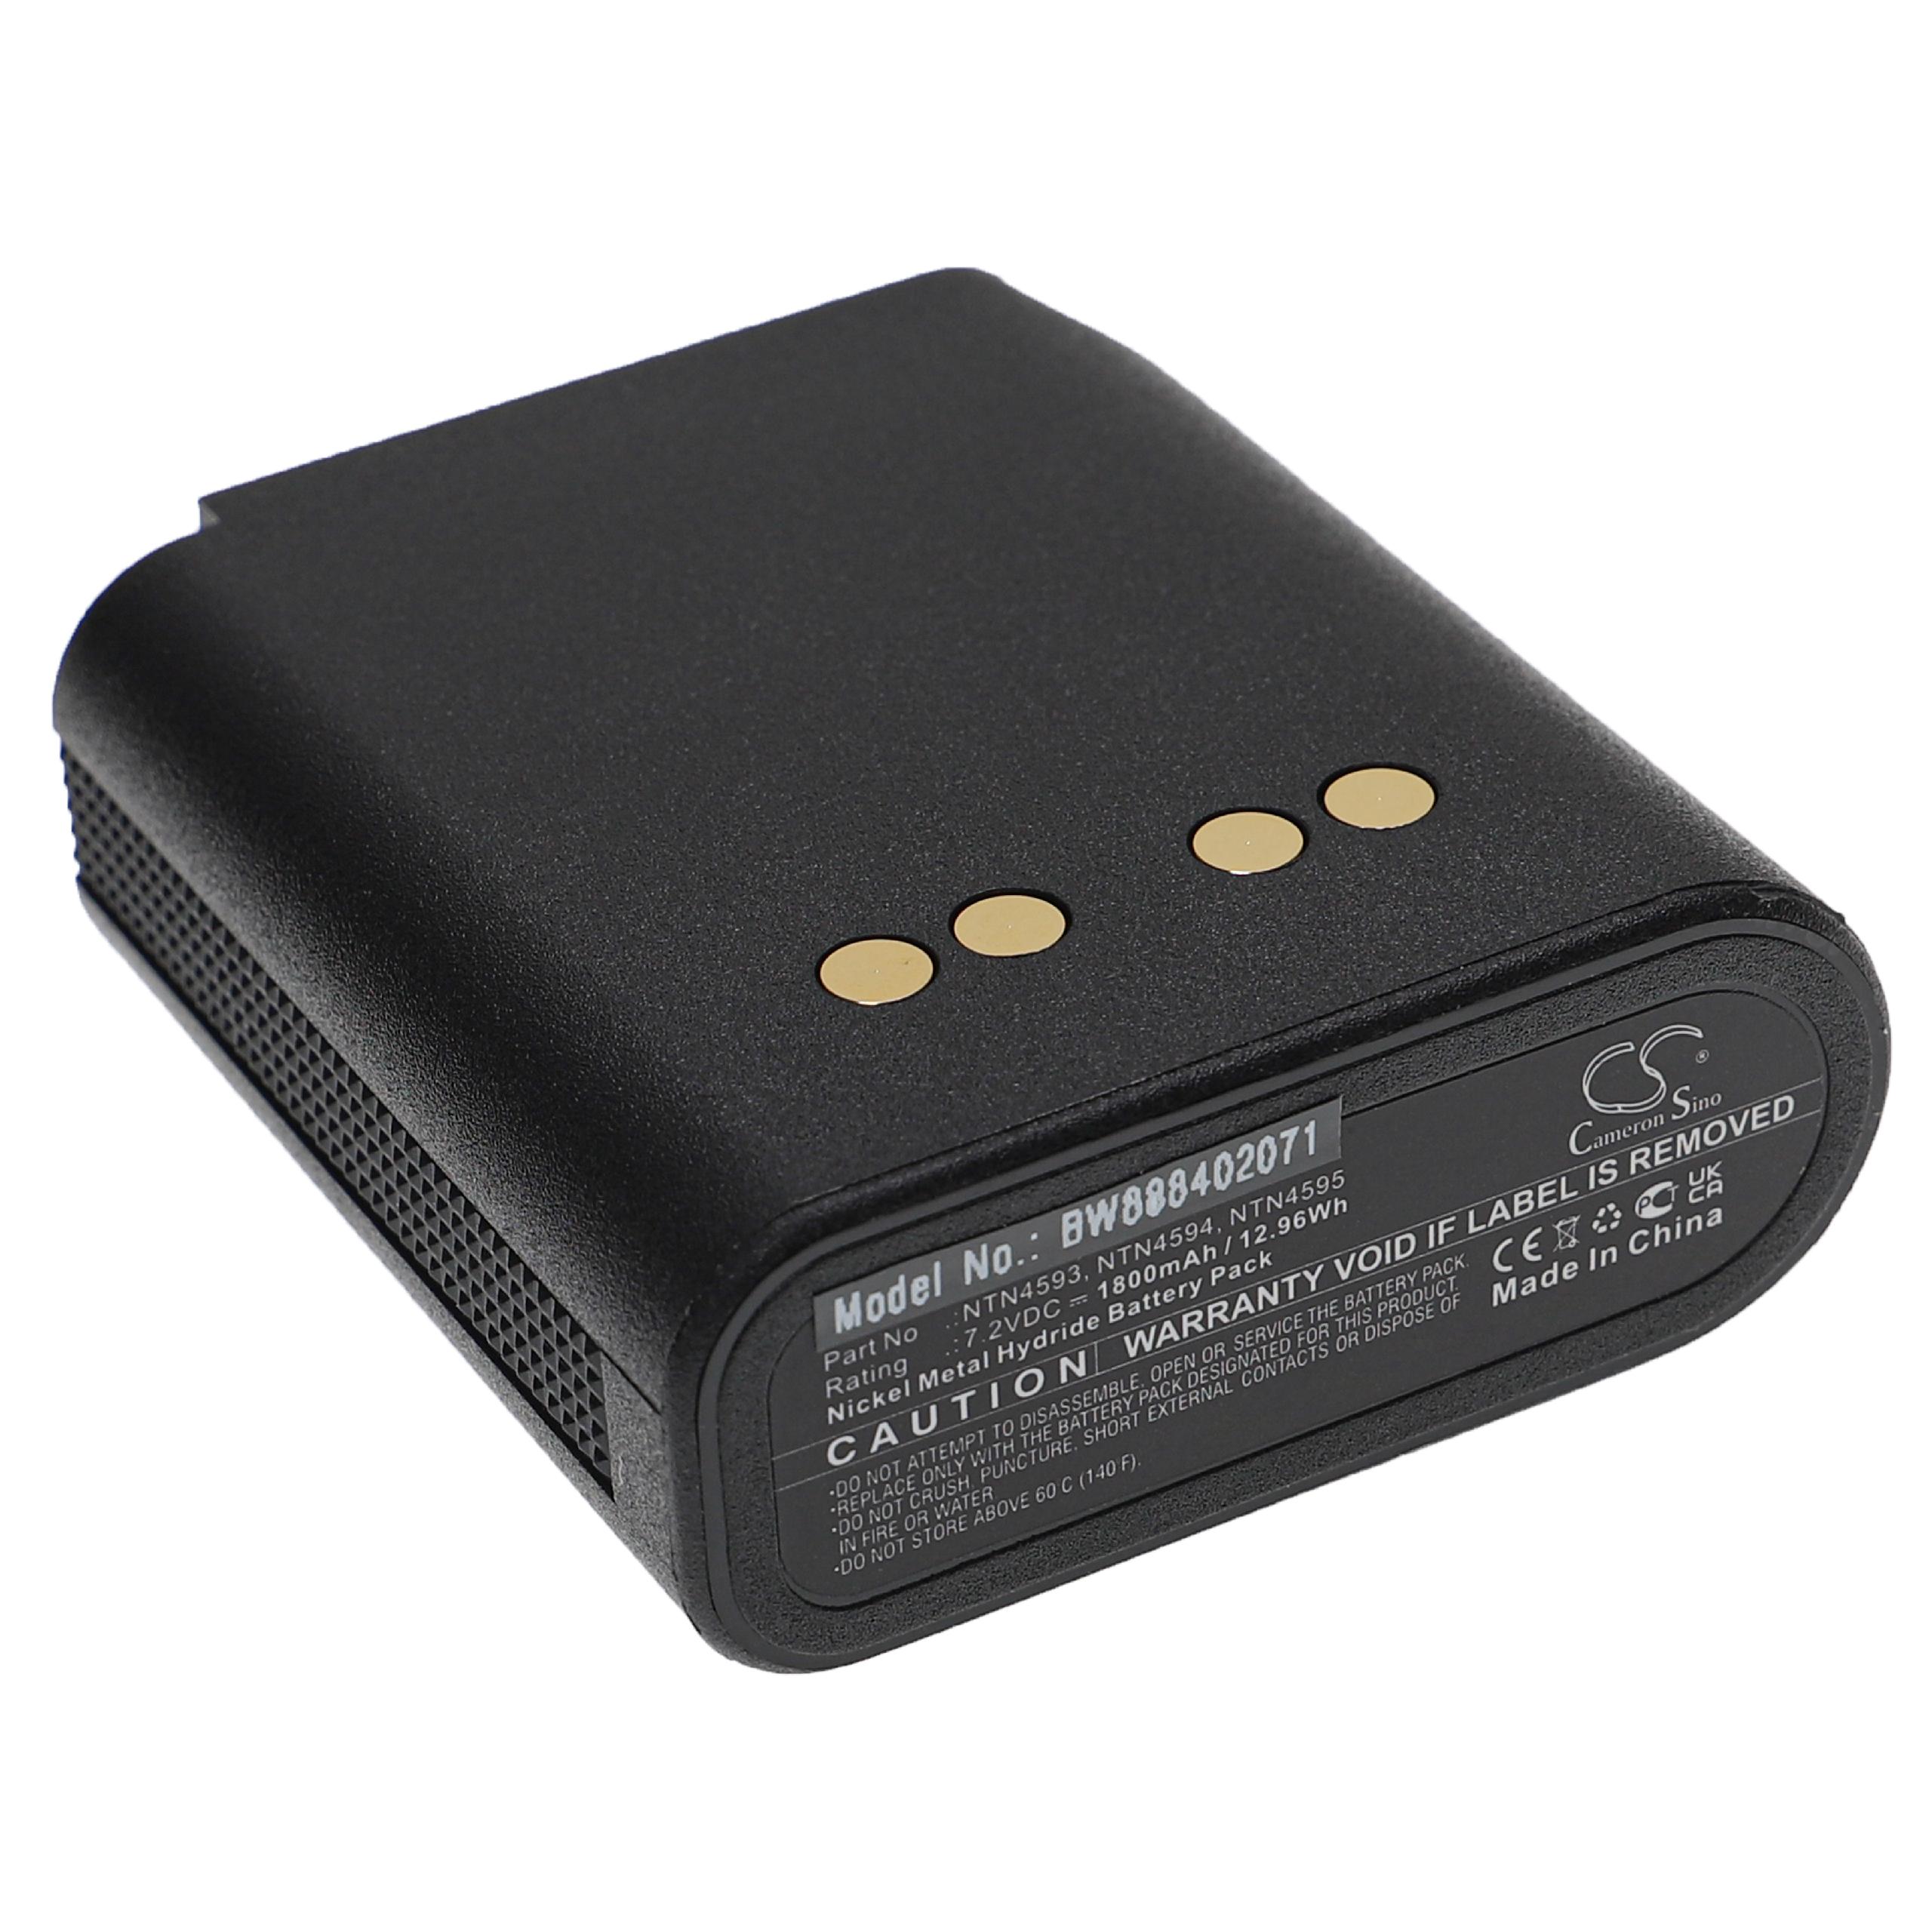 Batería reemplaza Motorola NTN4538, NTN4592, NTN4593 para radio, walkie-talkie Motorola - 1800 mAh 7,2 V NiMH